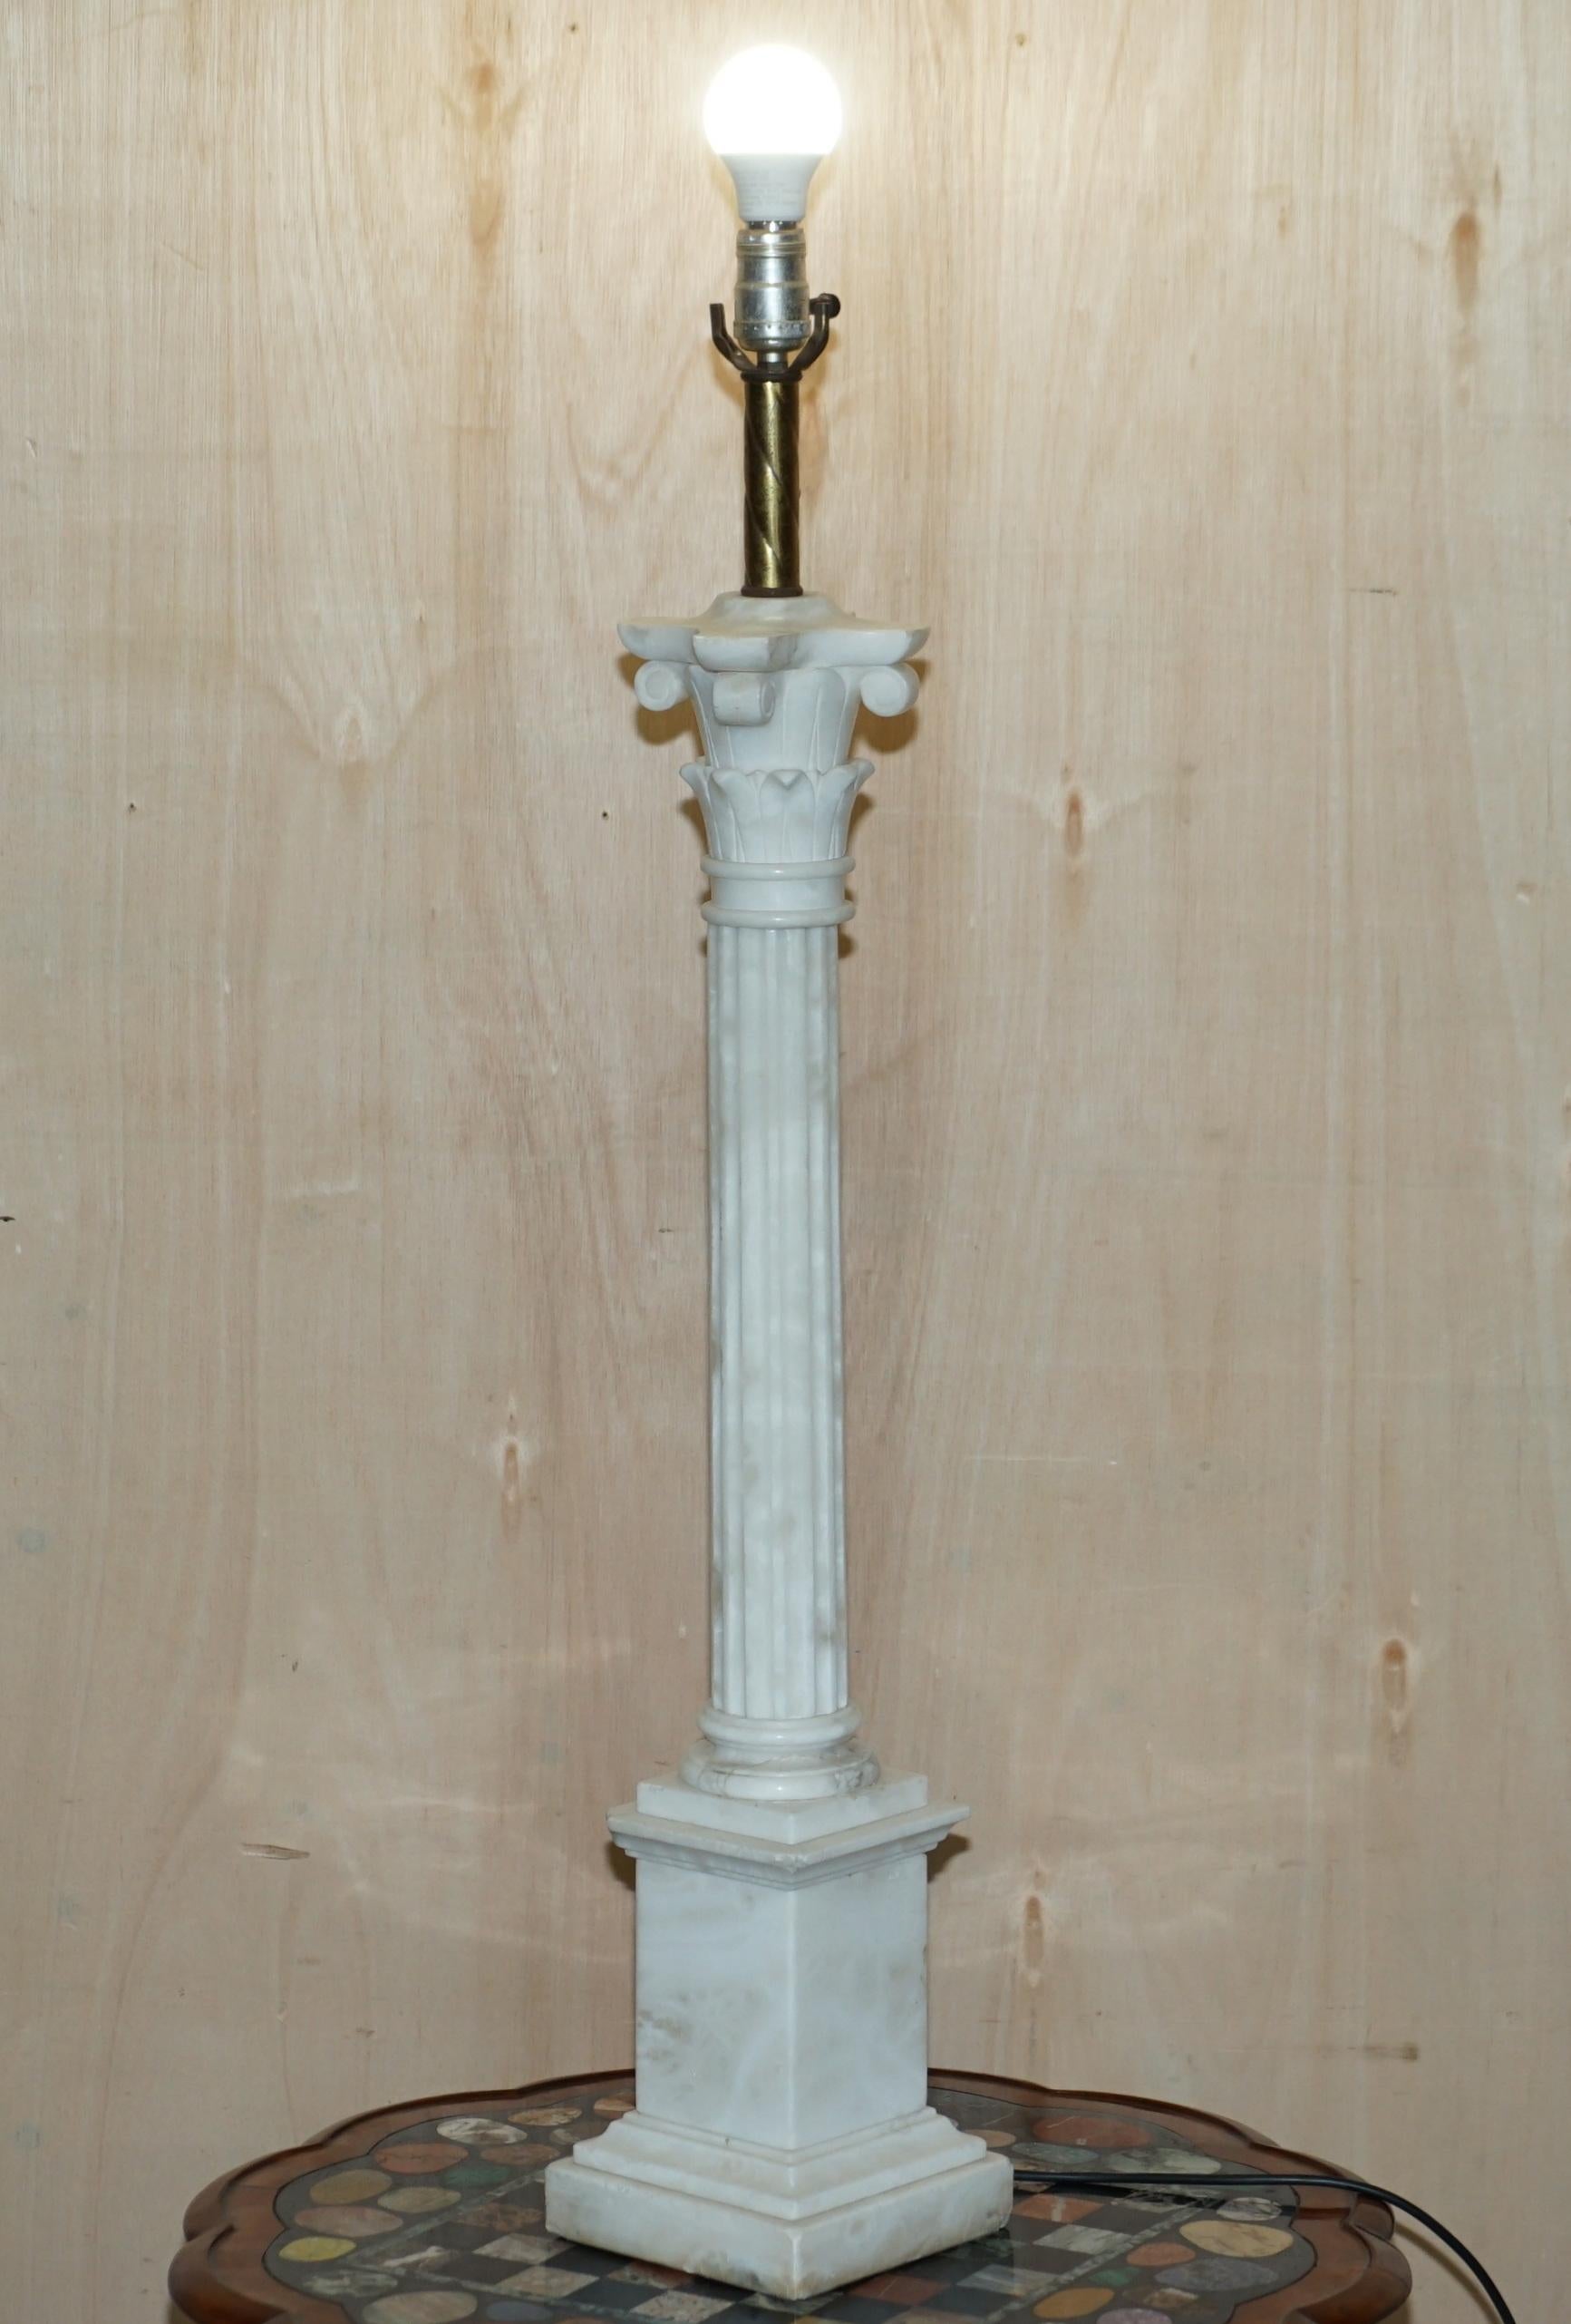 Wir freuen uns, diese absolut atemberaubende, sehr große Tischlampe aus massivem italienischen Carrara-Marmor zum Verkauf anbieten zu können

Diese Lampe ist sehr sammelwürdig, es ist außergewöhnlich groß für seine Art, fast 1 Meter hoch

Wir